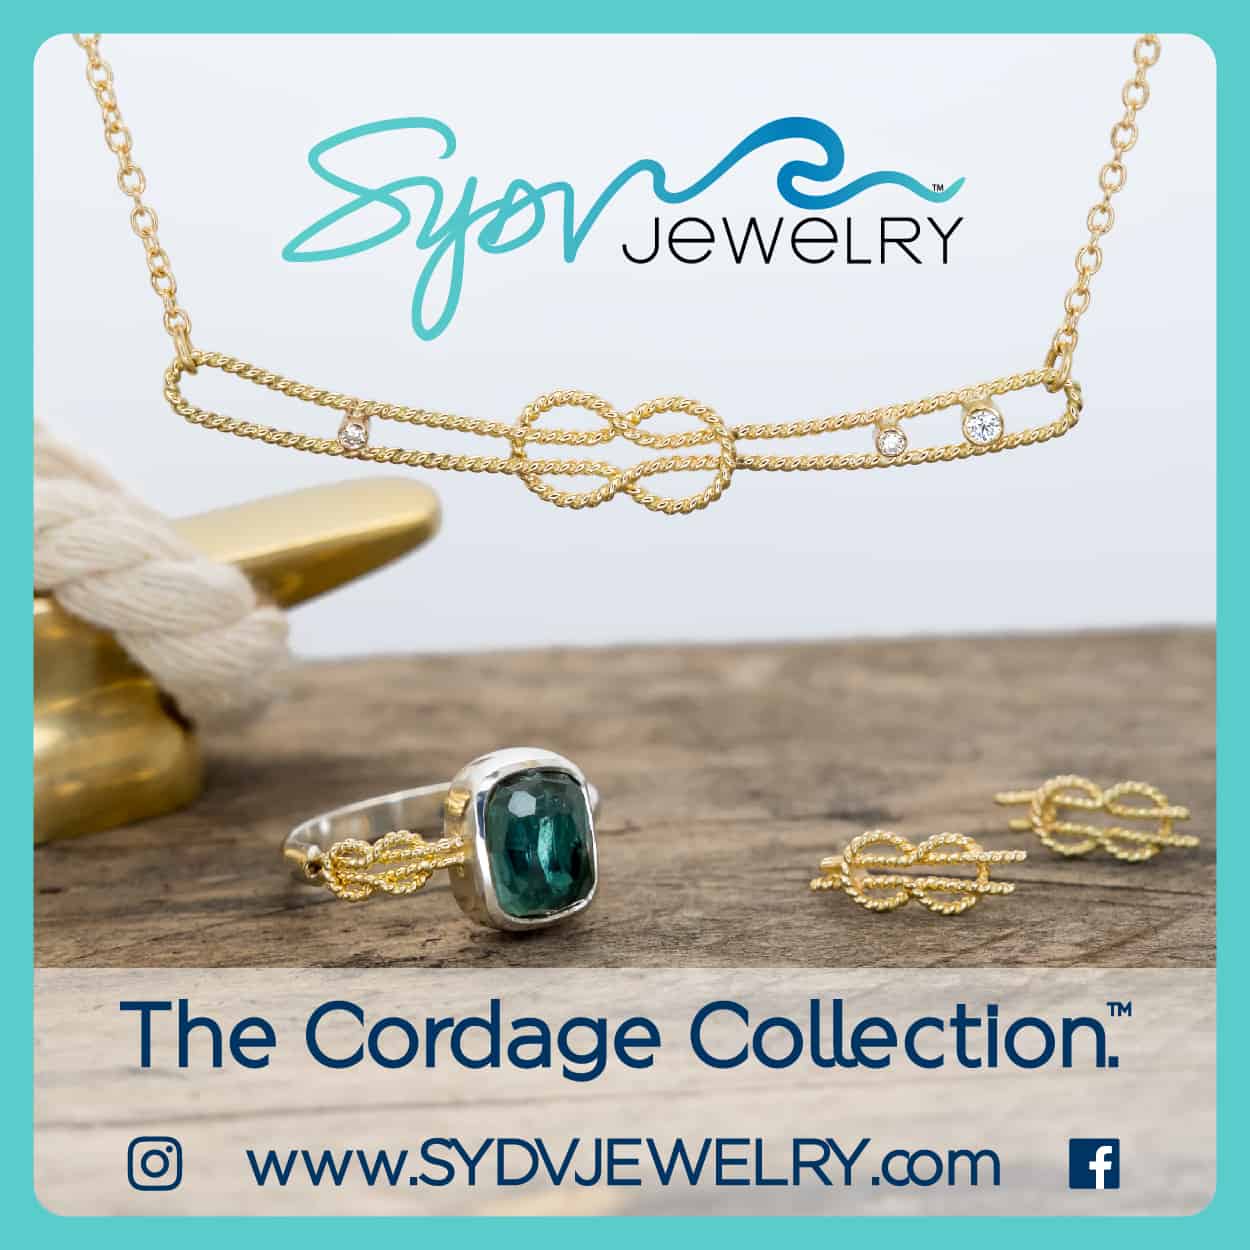 SYDV Jewelry